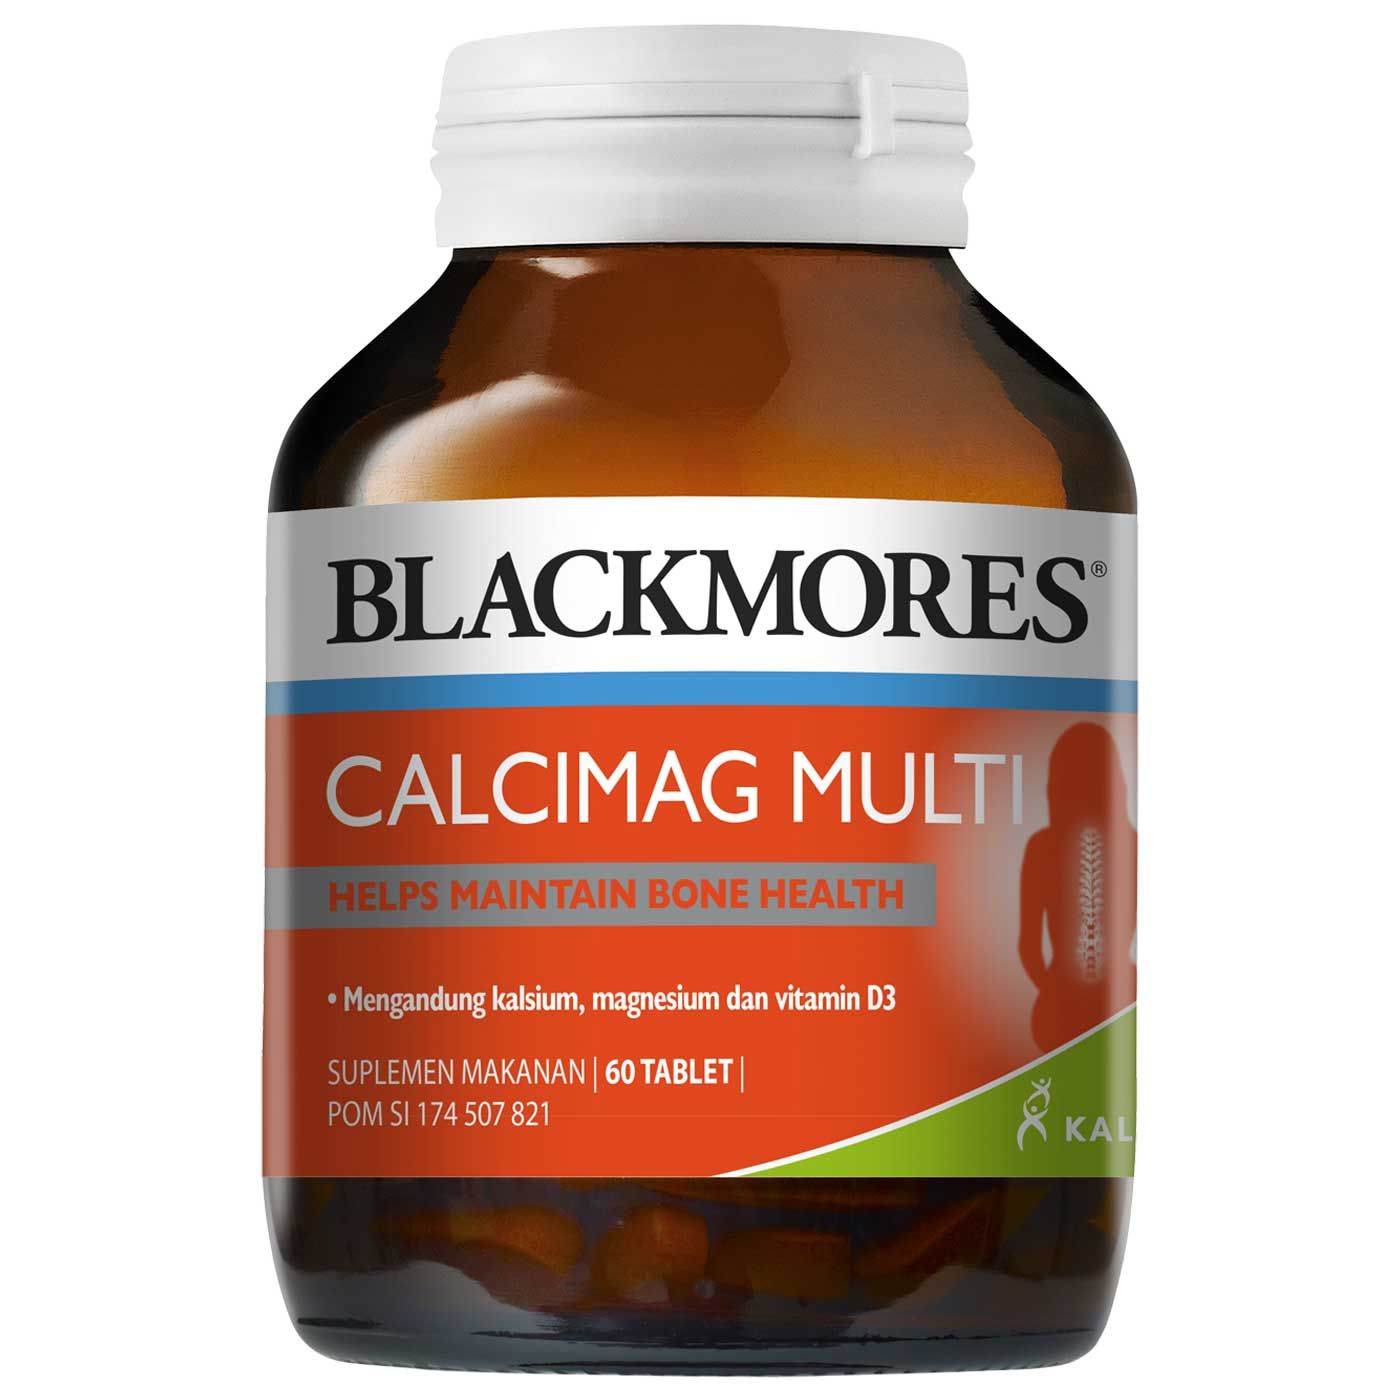 Blackmores Calcimag Multi - 1